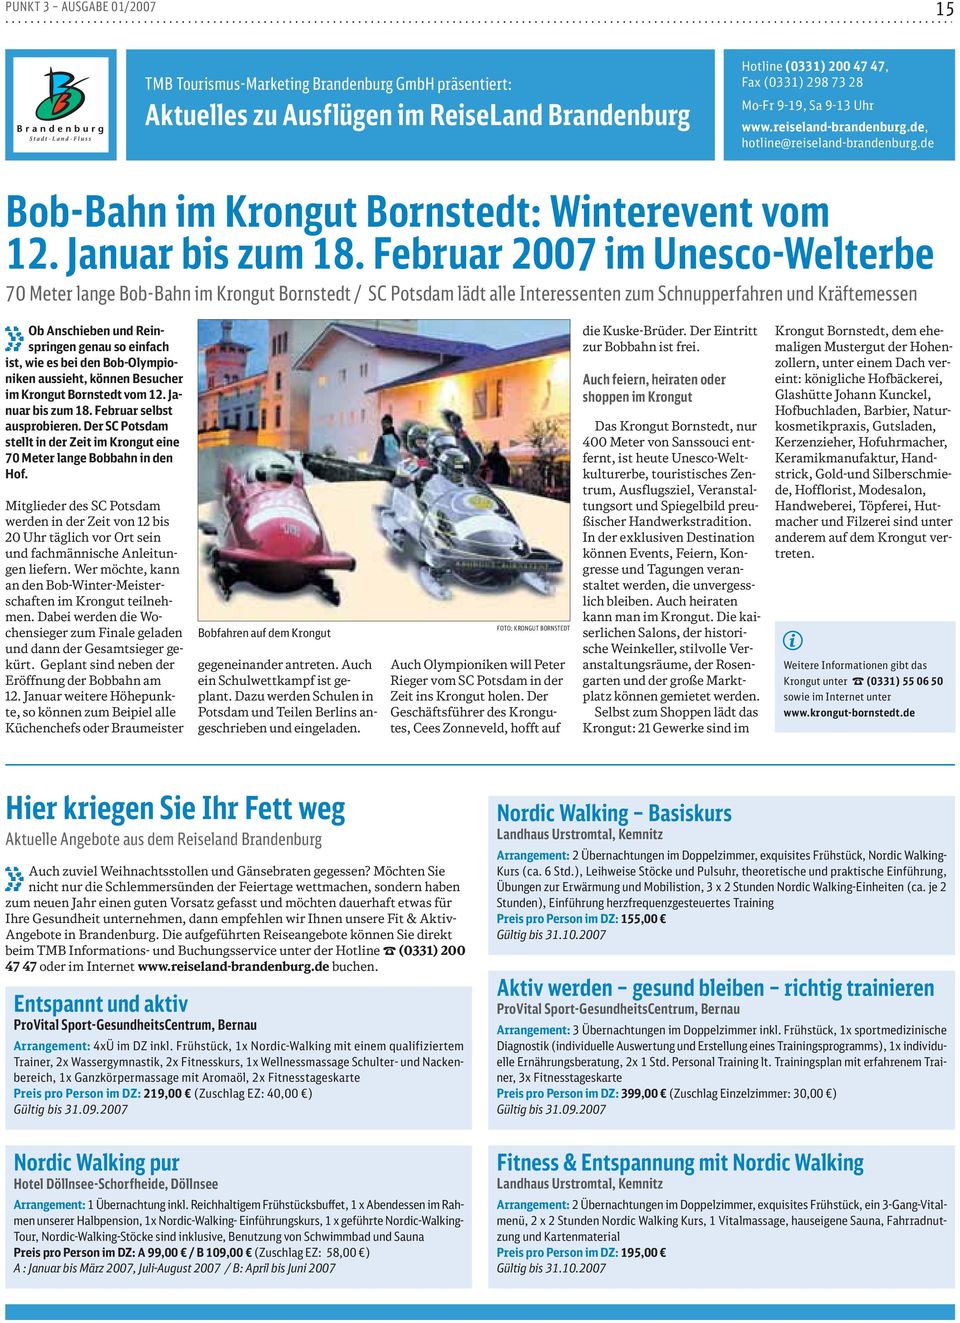 Februar 2007 m Unesco-Welterbe 70 Meter lange Bob-Bahn m Krongut Bornstedt / SC Potsdam lädt alle Interessenten zum Schnupperfahren und Kräftemessen Ob Anscheben und Rensprngen genau so enfach st, we